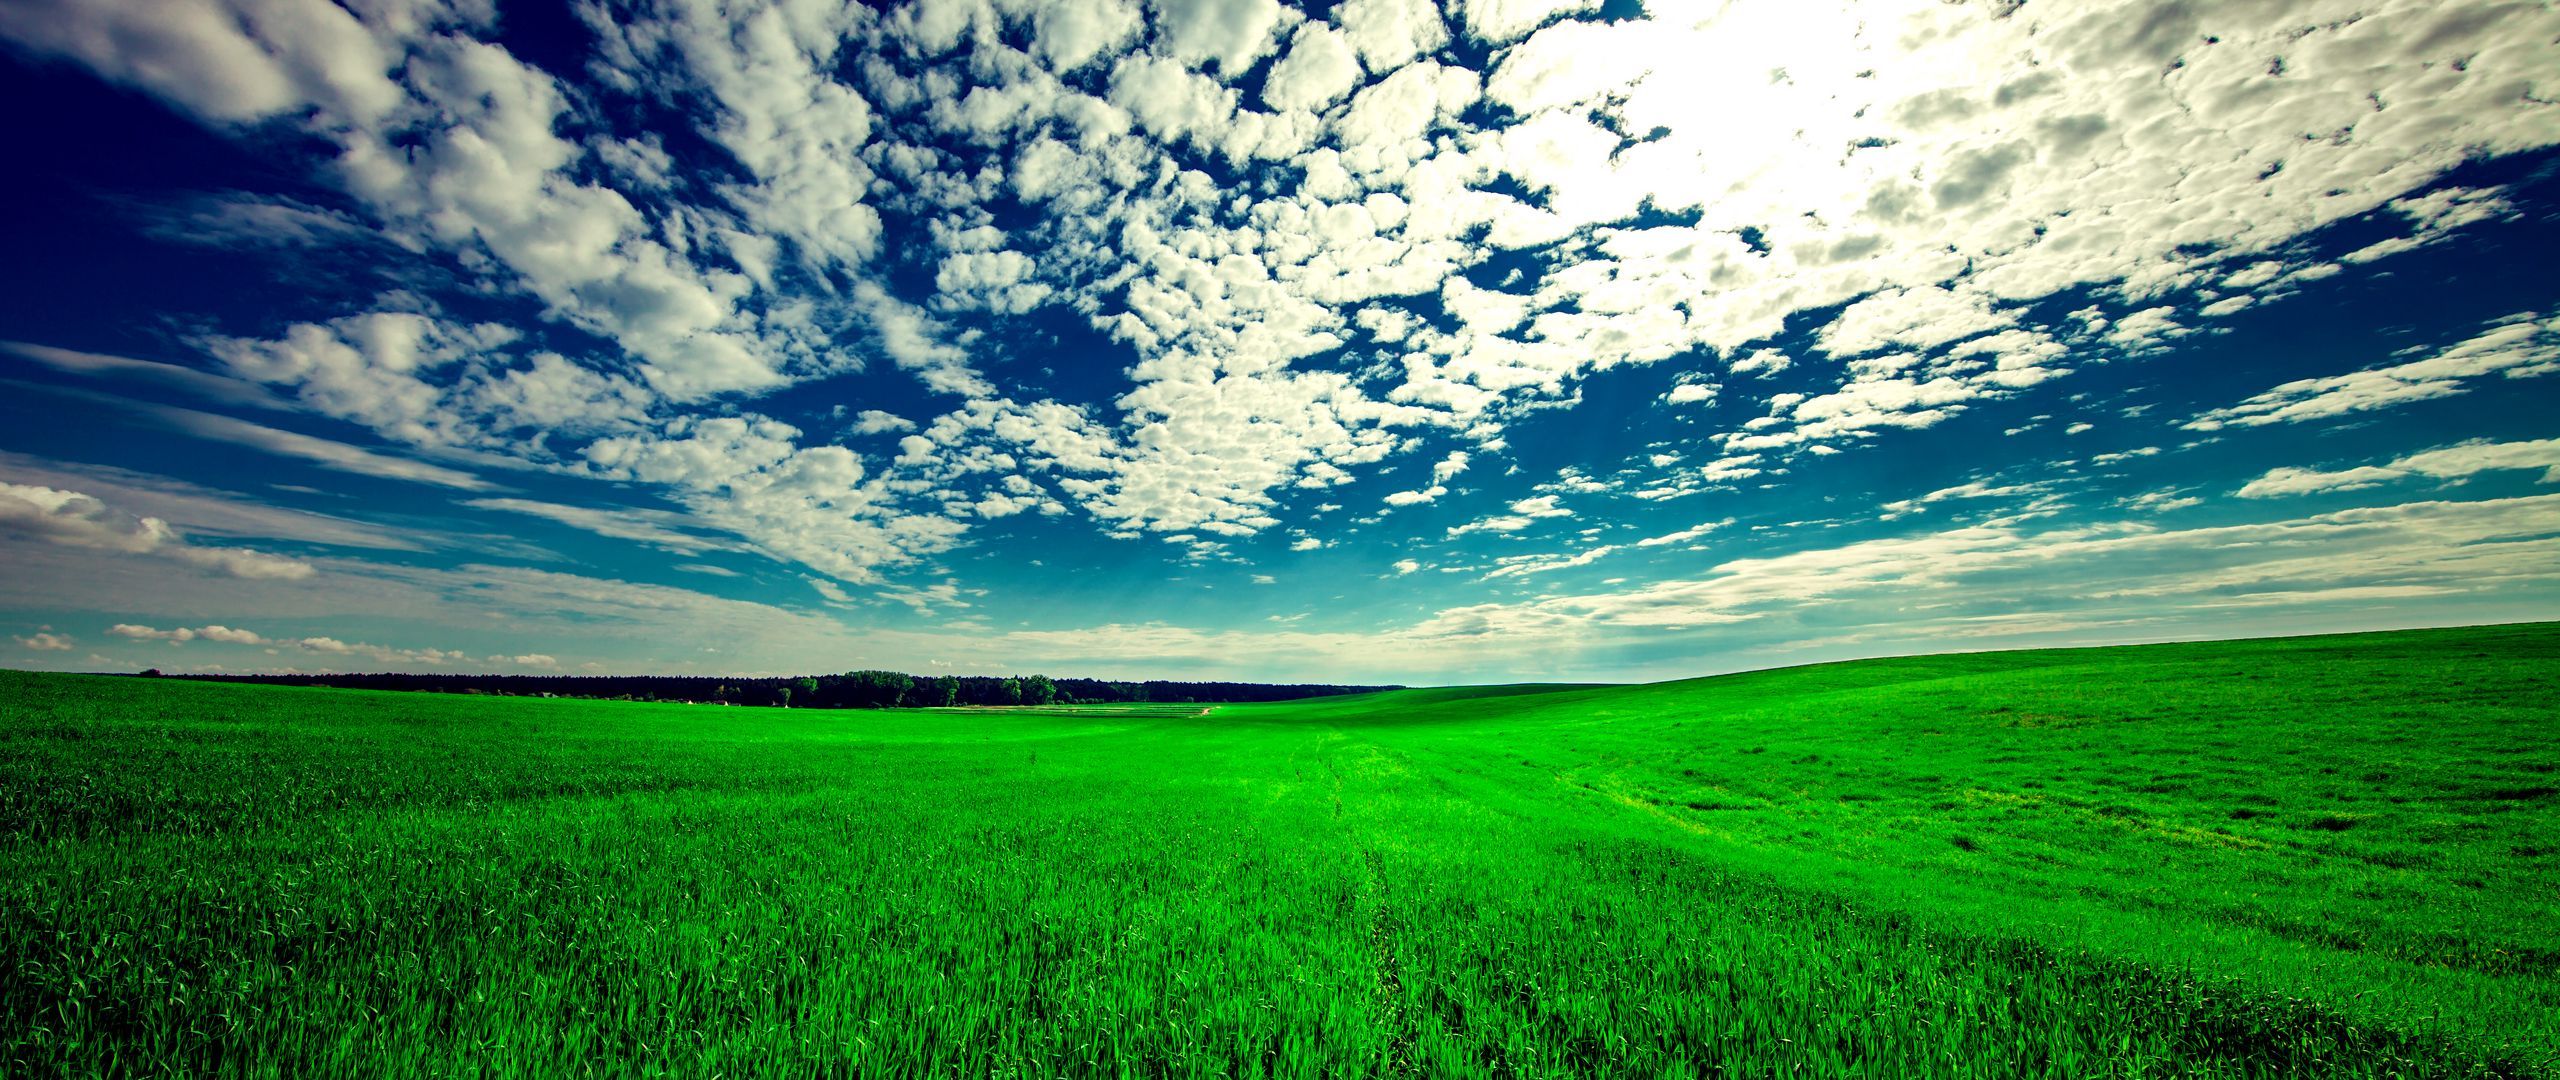 Download wallpaper 2560x1080 field, sky, grass, clouds, green